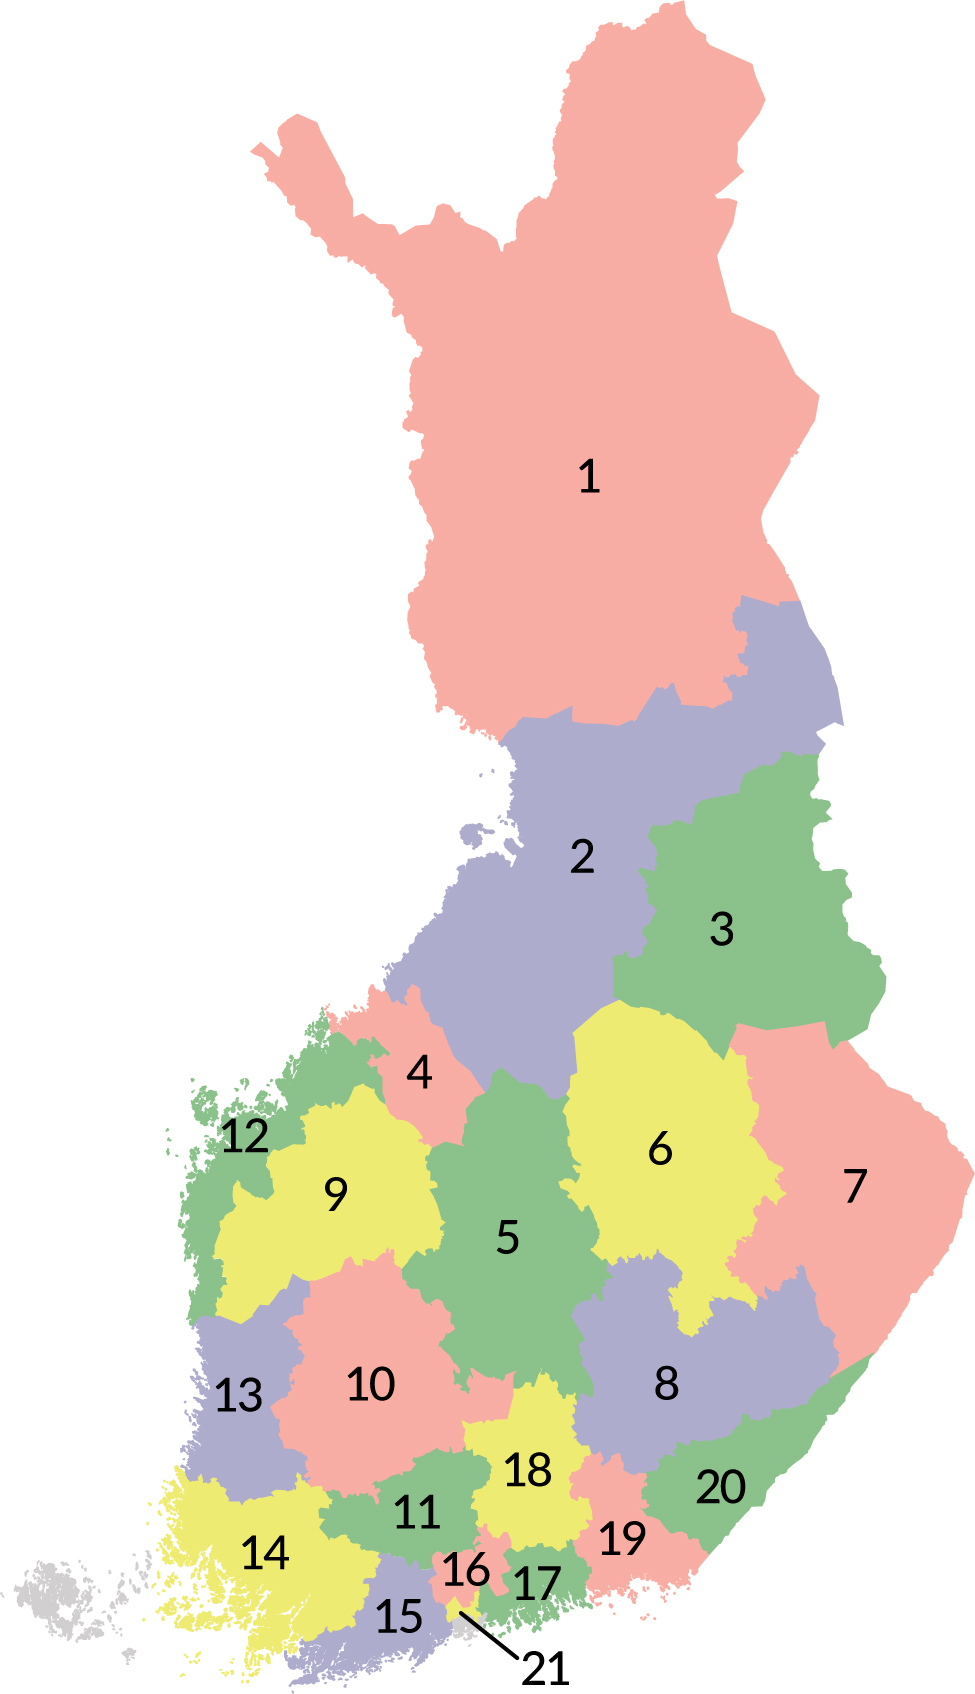 Finlands karta. Där finns siffror och olika färger på olika områden.